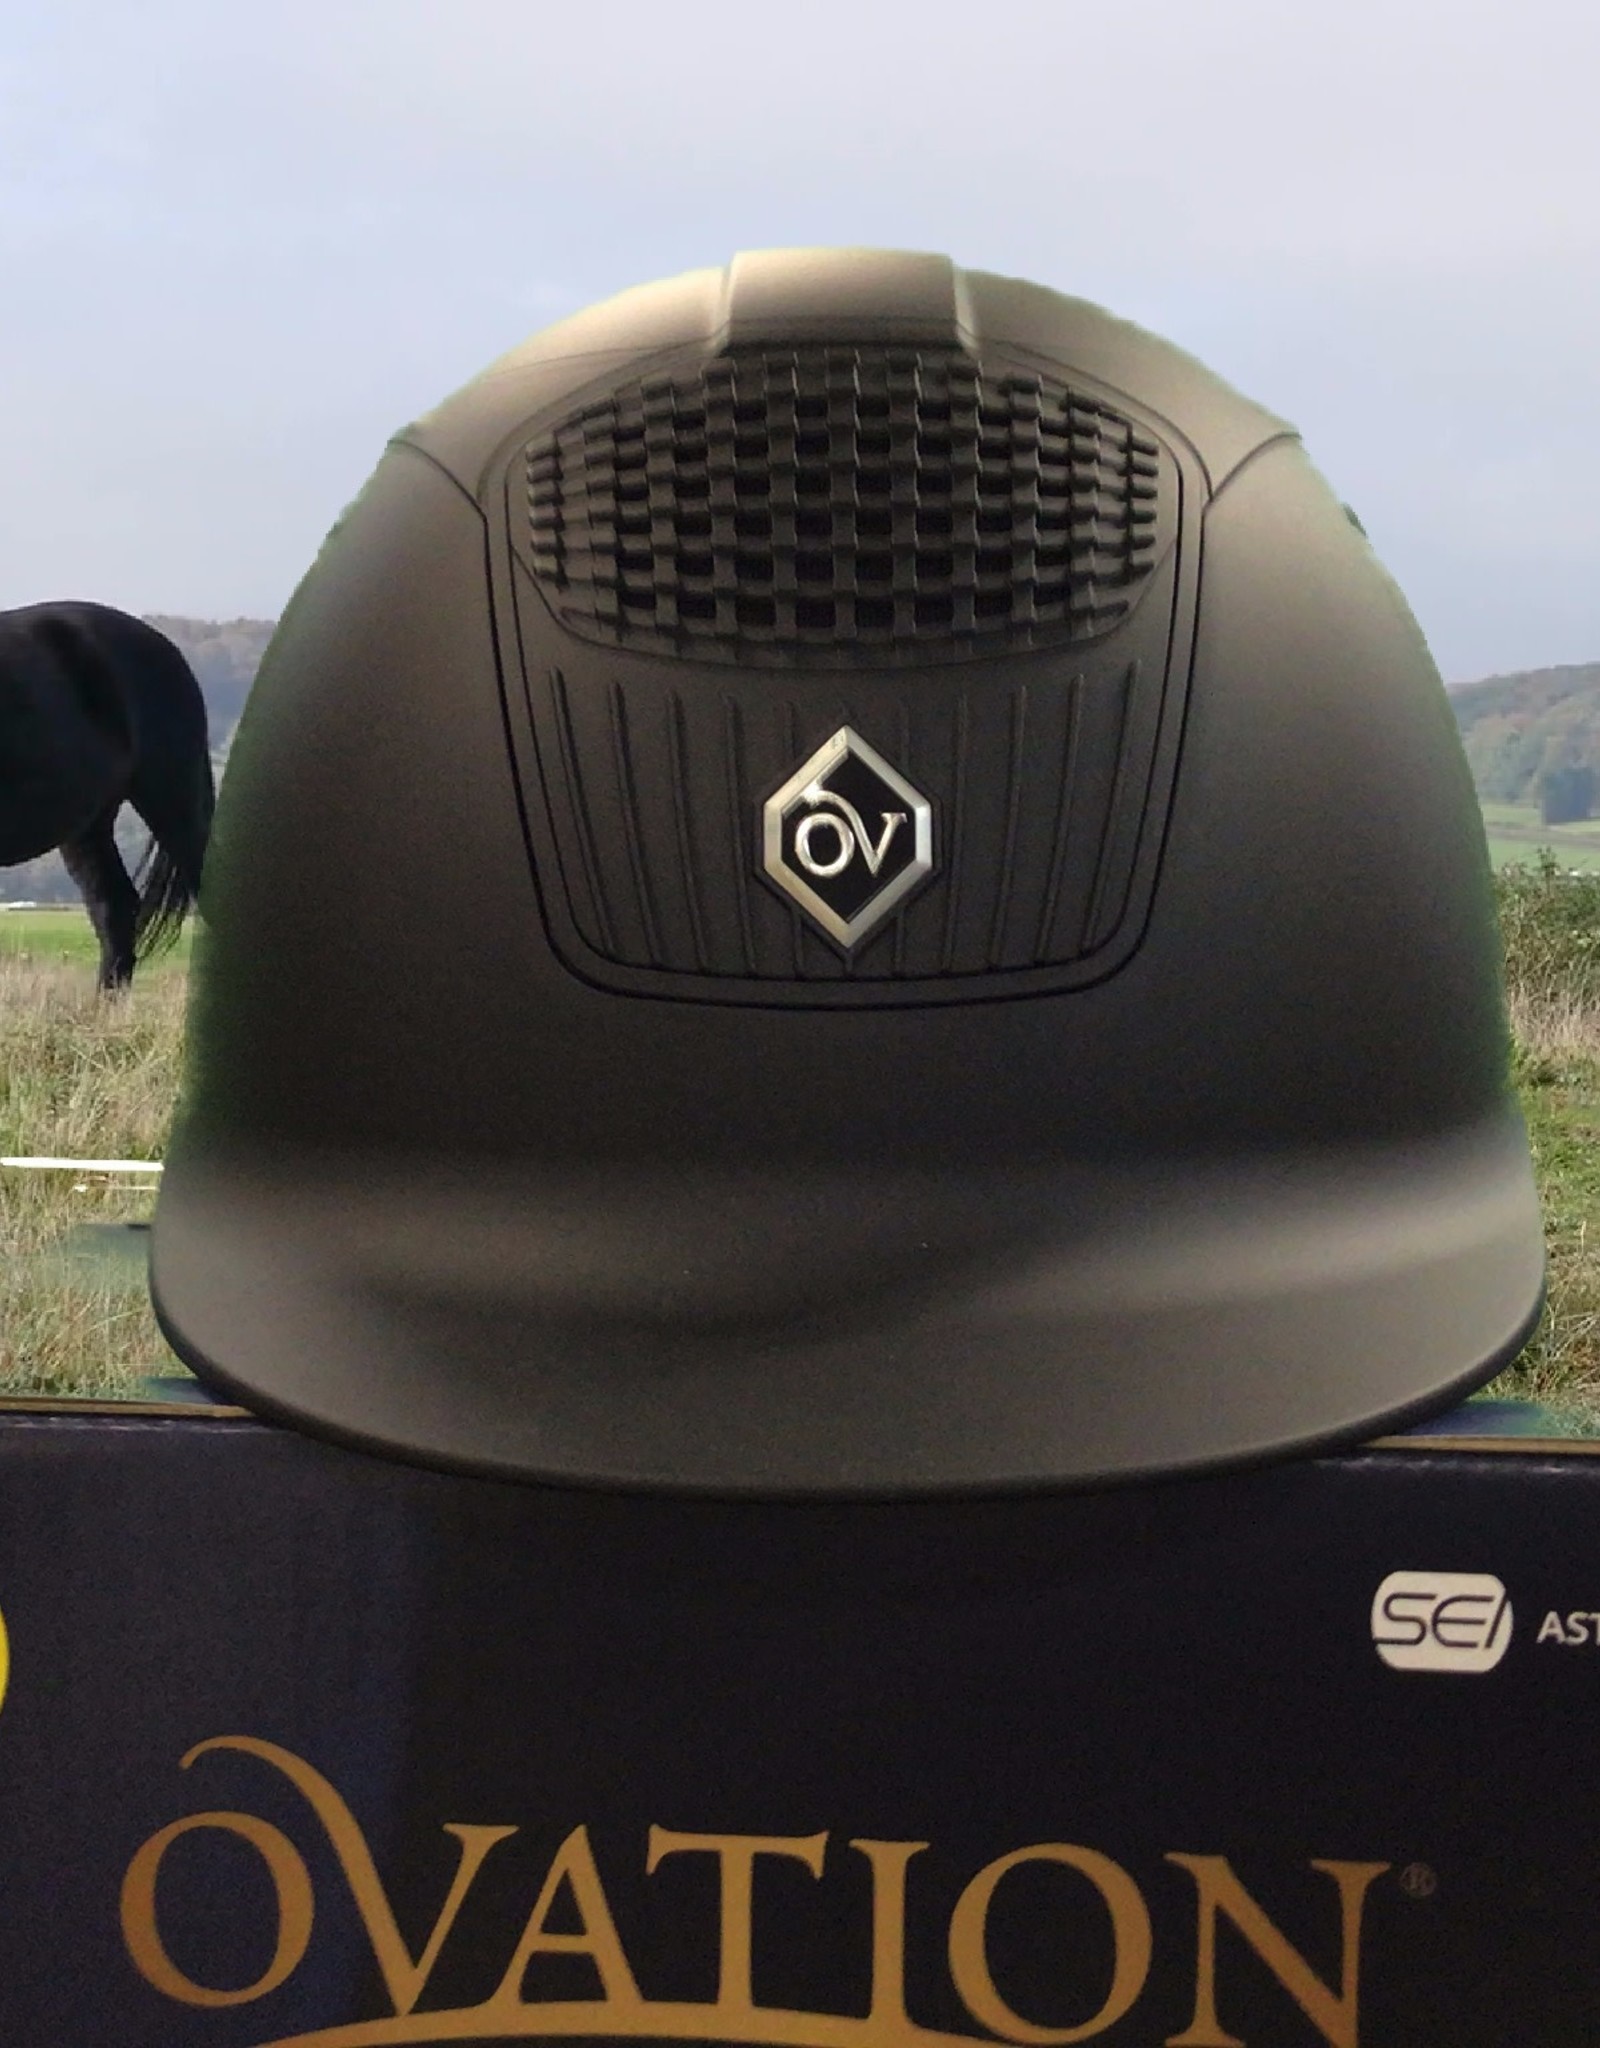 Ovation M Class MIPS Helmet